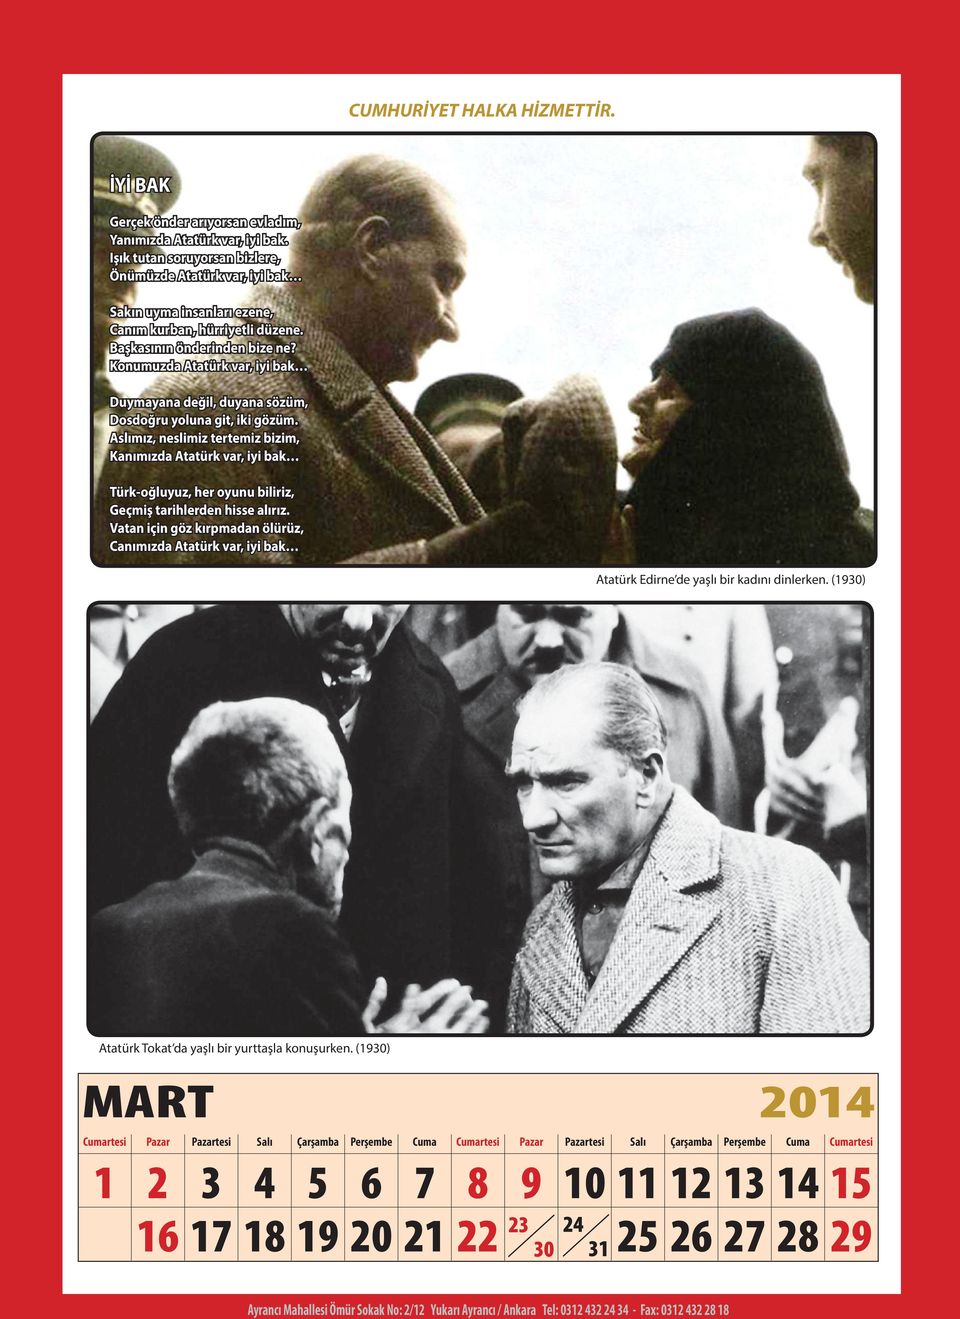 Konumuzda Atatürk var, iyi bak Duymayana değil, duyana sözüm, Dosdoğru yoluna git, iki gözüm.